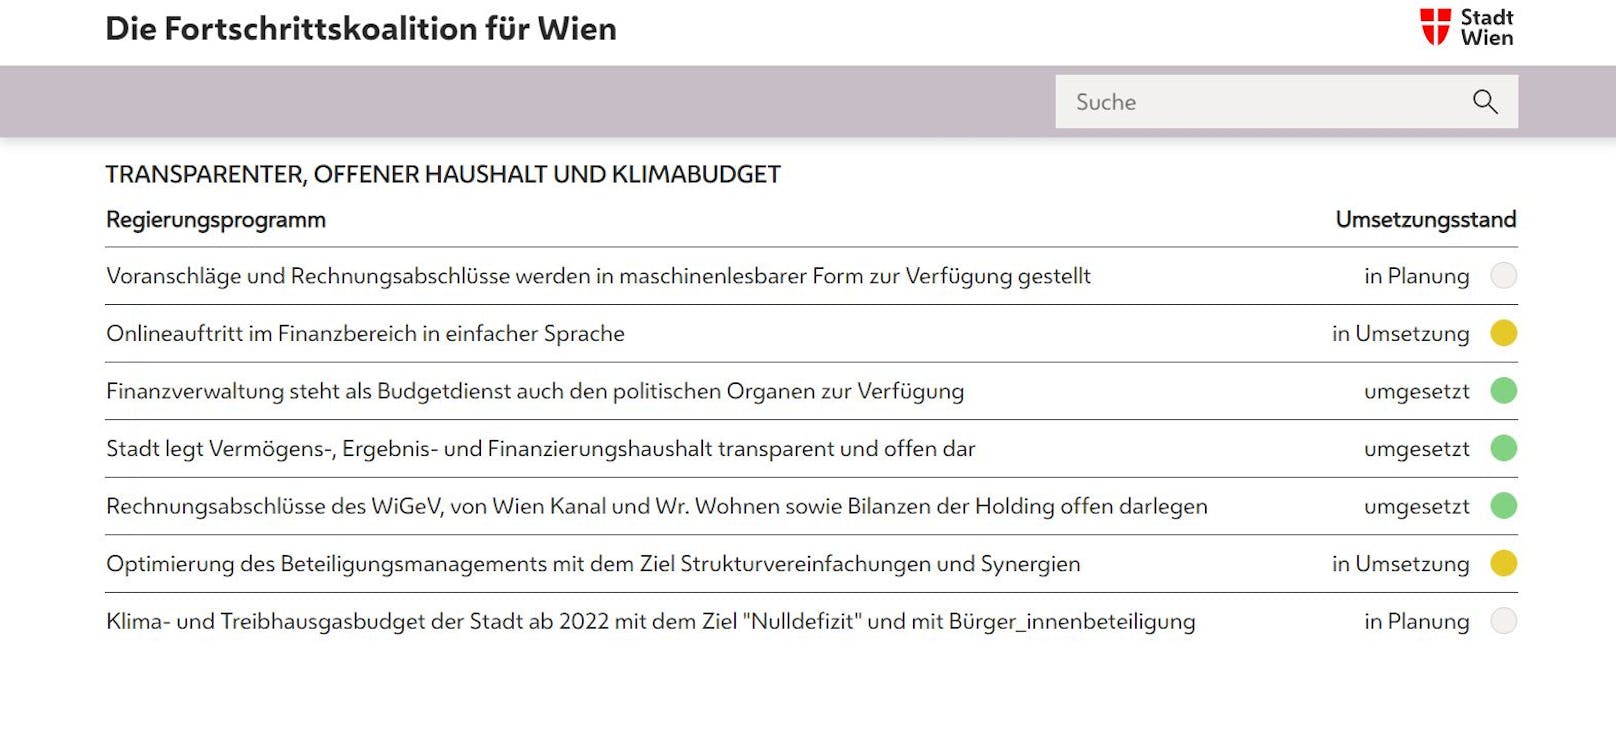 Der Wiener Regierungsmonitor listet in neun Kategorie über 800 Projekte auf. Farbcodes (weiß steht für "geplant", gelb für "in Vorbereitung oder Umsetzung" und grün für "umgesetzt") zeigen den aktuellen Projektstatus an.